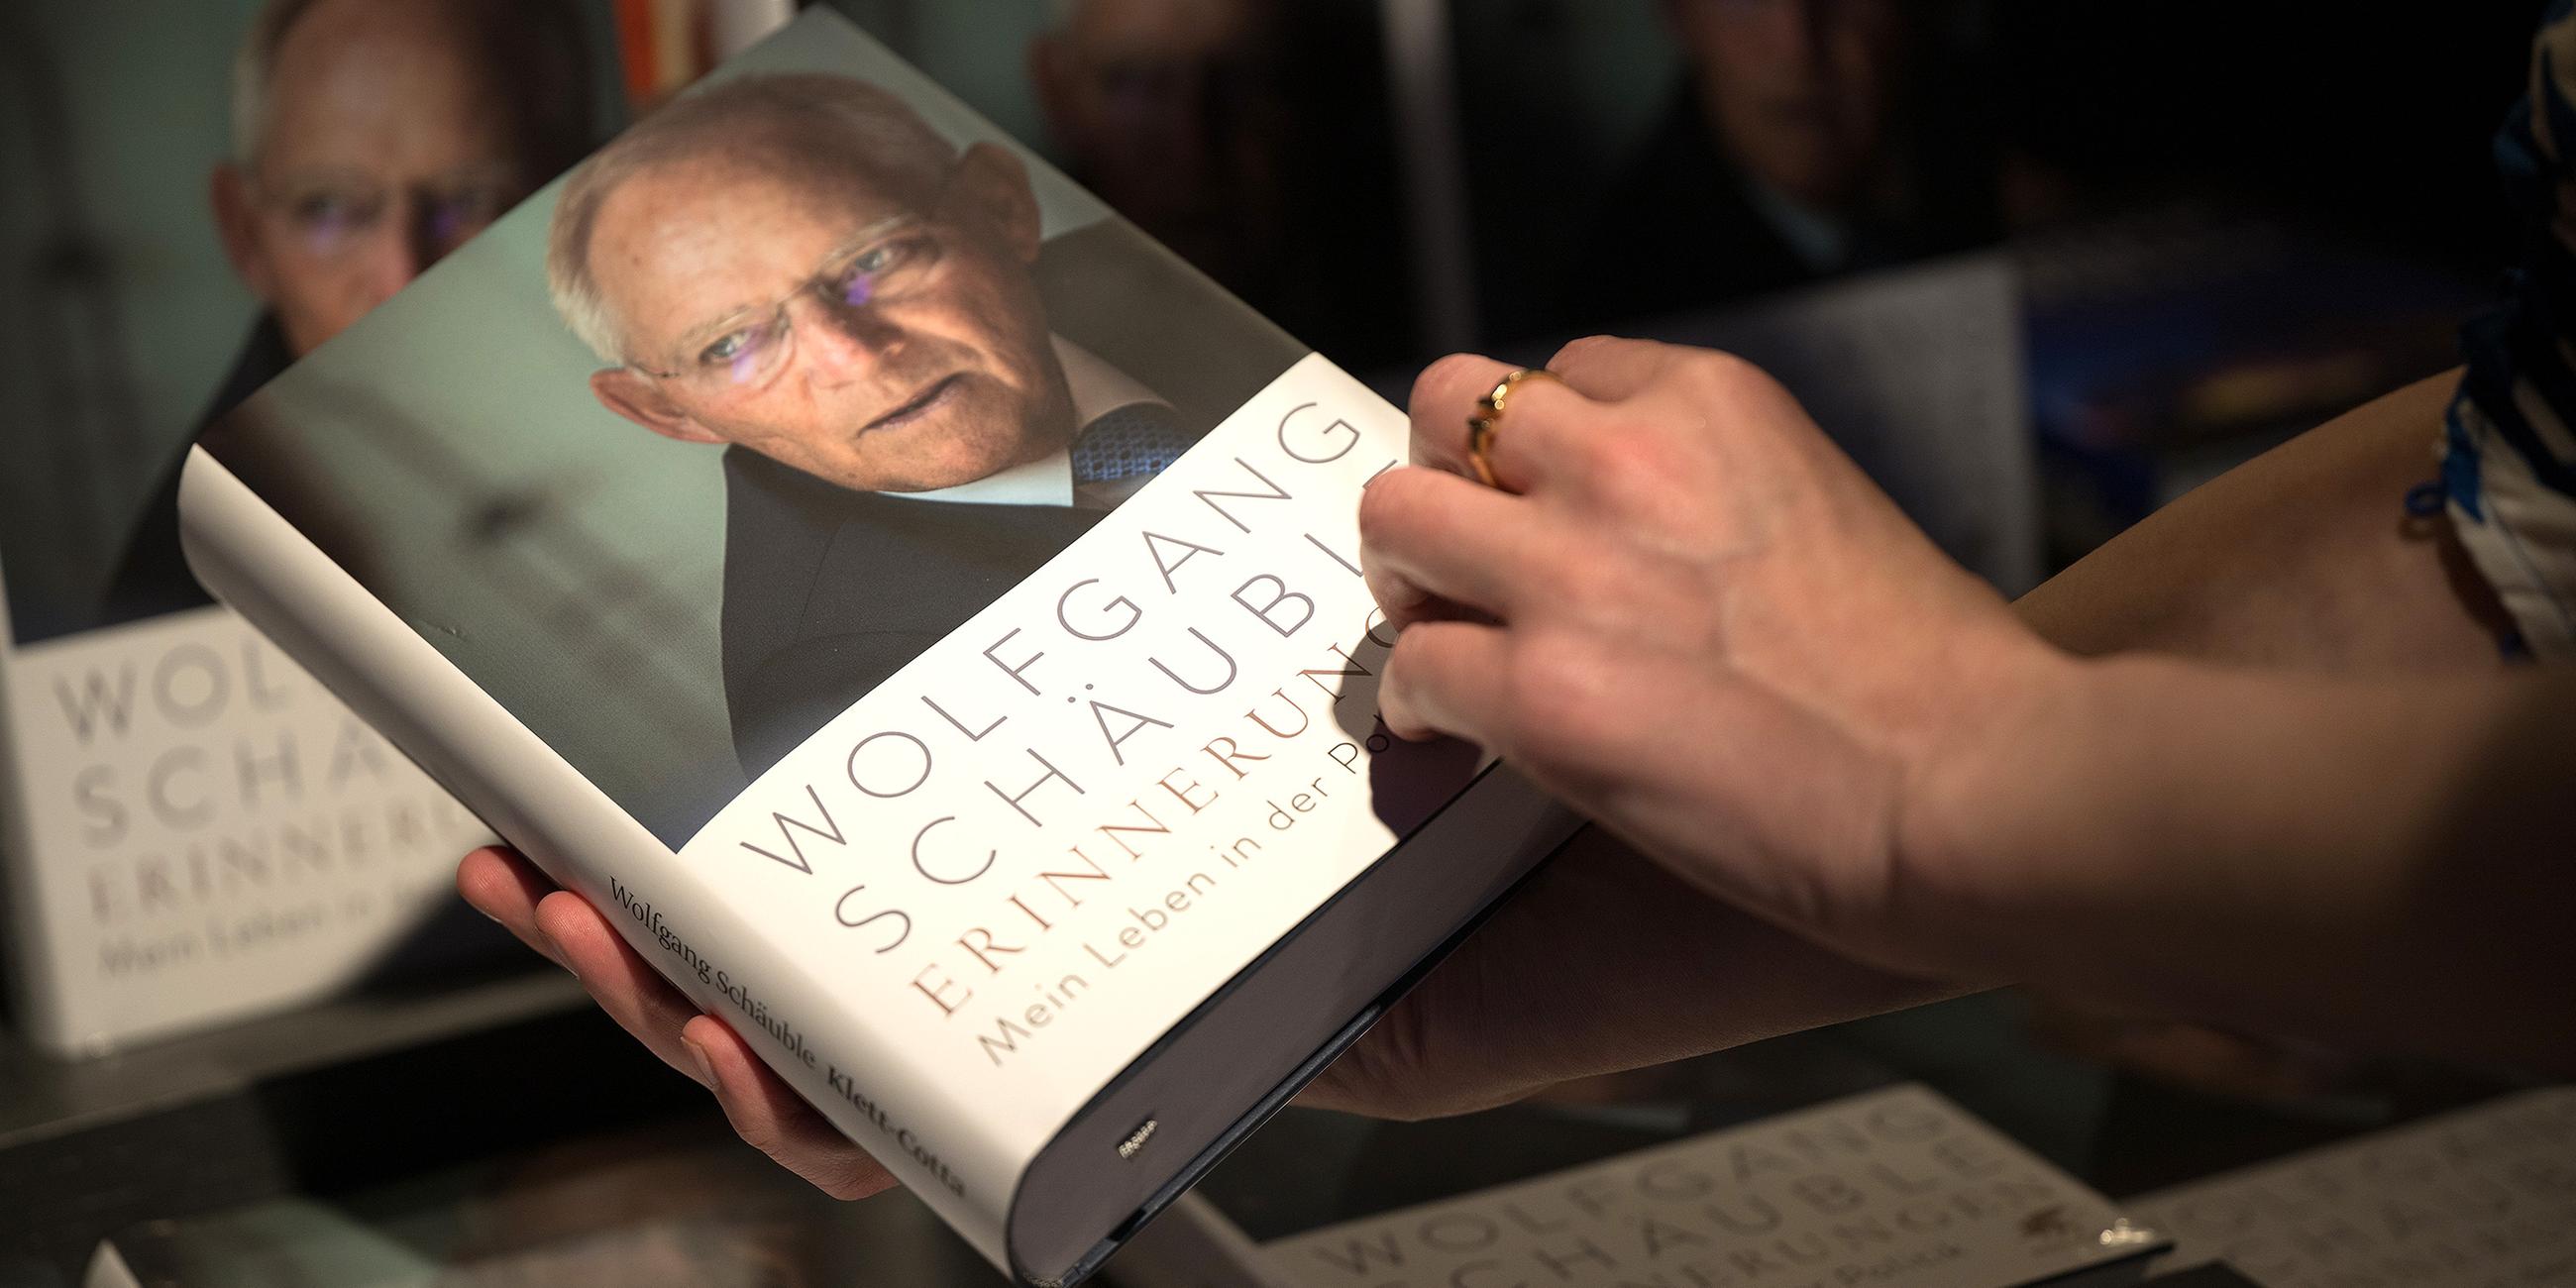 Jemand hält das Buch "Erinnerungen" von Wolfgang Schäuble in der Hand